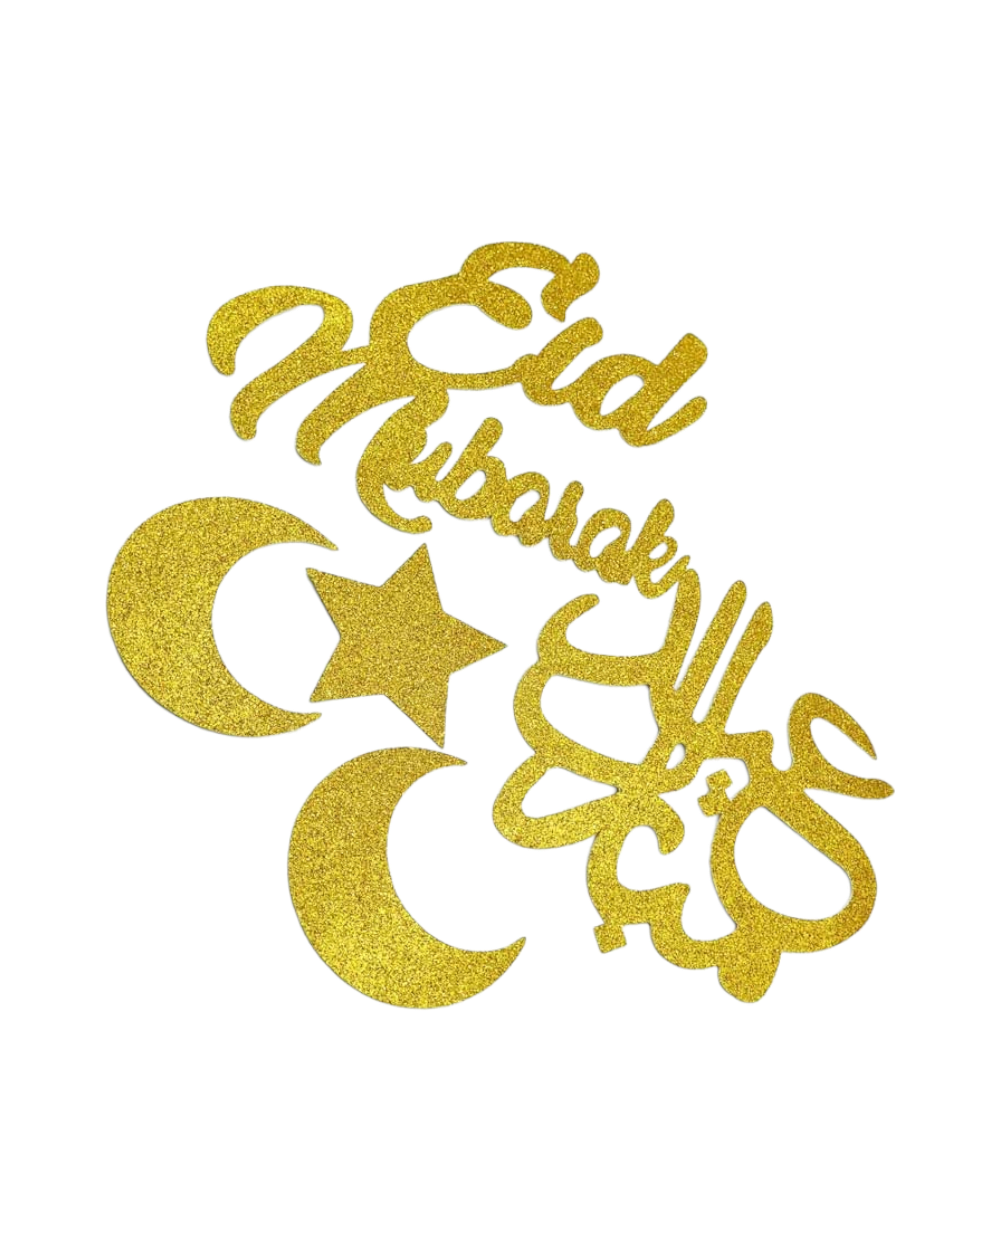 Décoration cartonnée pailletée Eid Mubarak - Doré